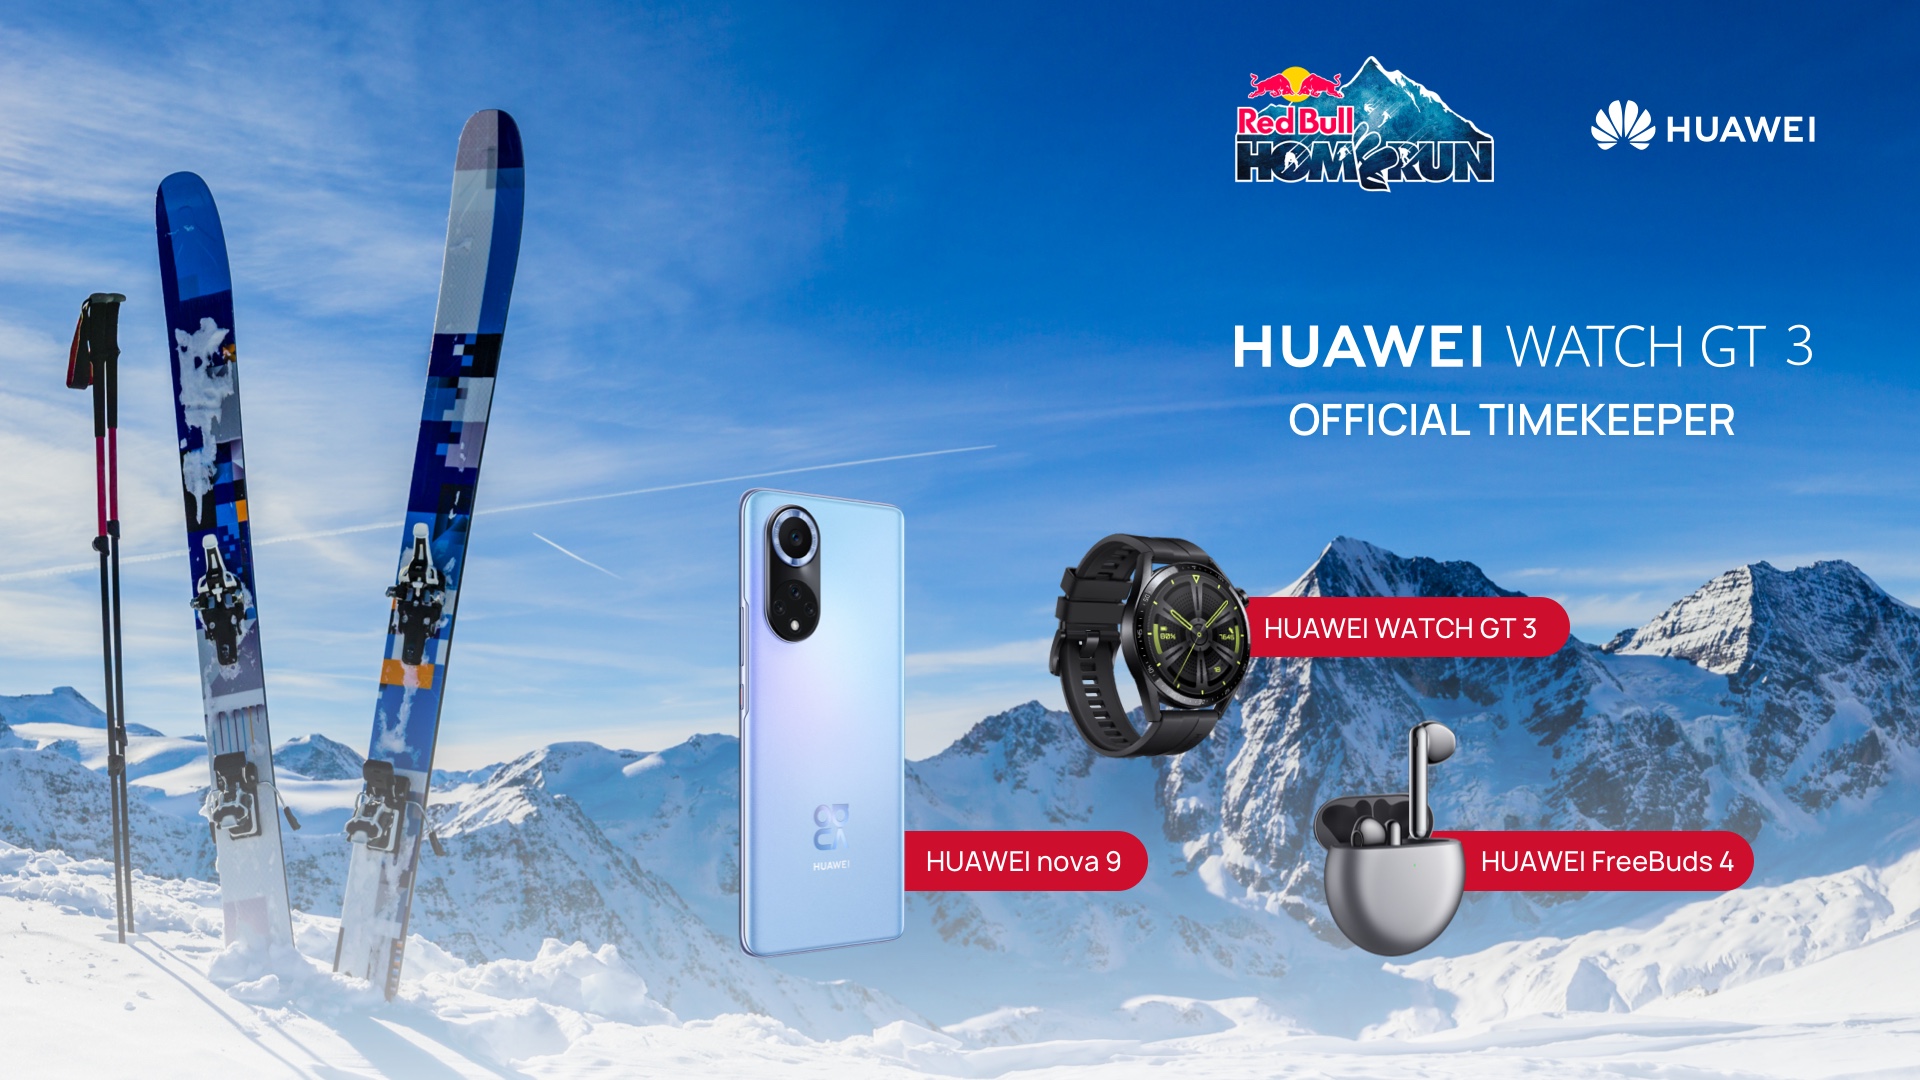 Huawei face echipă cu Red Bull și dă startul sezonului Winter Sports 2022